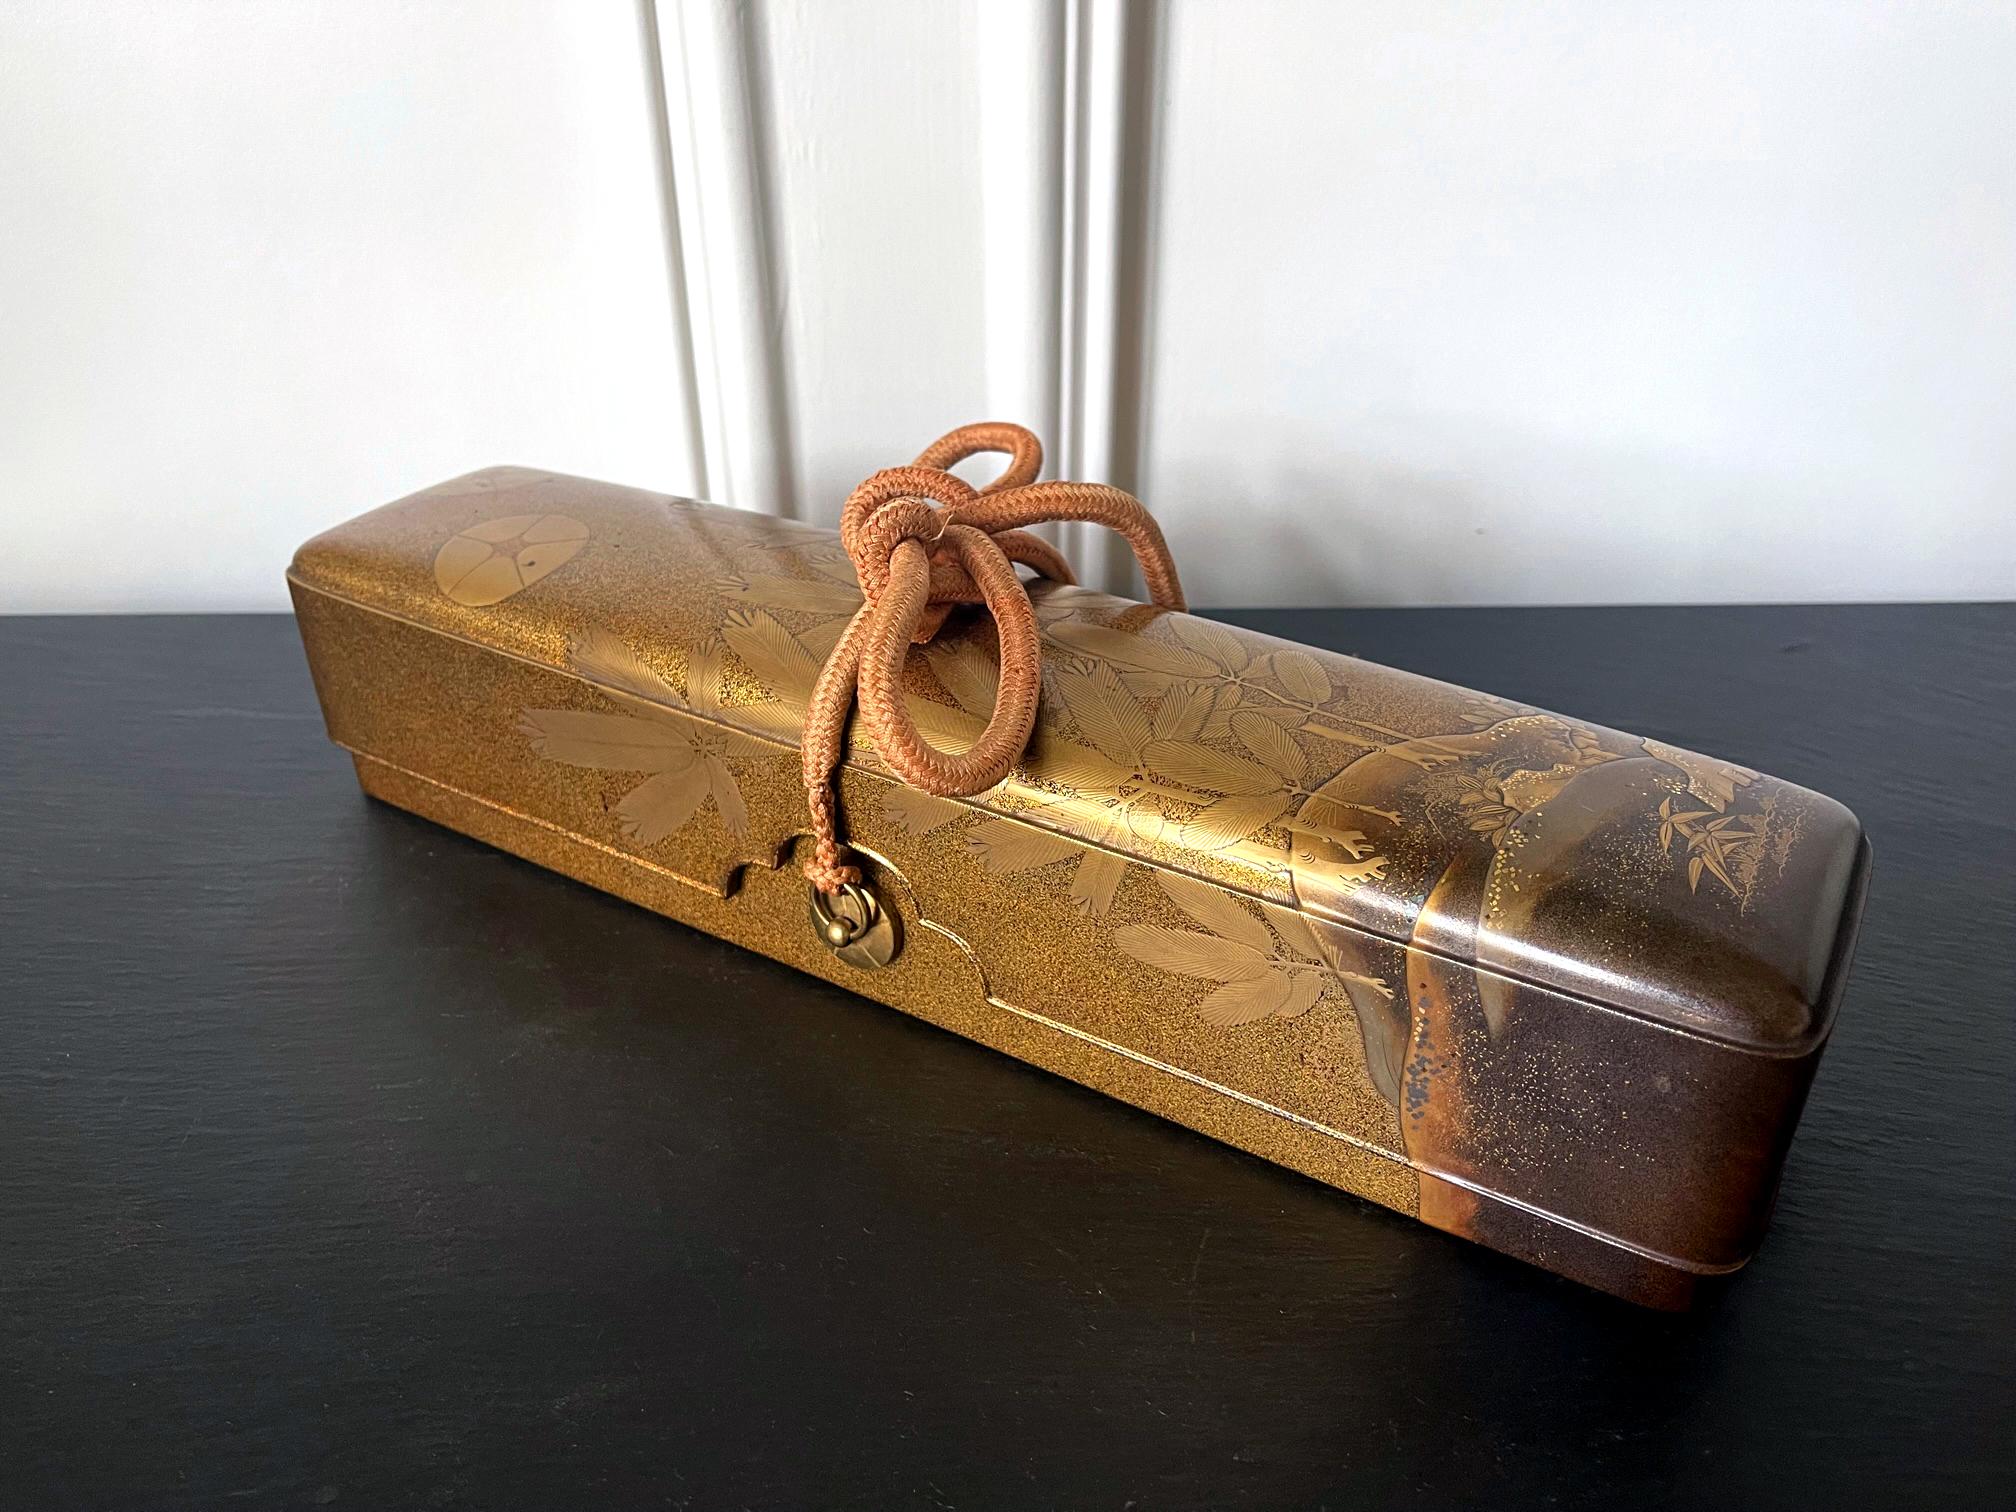 Ein japanischer Naga Fubako aus lackiertem Holz (eine lange Kiste, die zur Aufbewahrung von Dokumenten oder großen Rollbildern verwendet wird), ca. 19. Jahrhundert, Meiji-Zeit. Das rechteckige Kästchen hat einen ungewöhnlich tiefen Deckel mit leicht